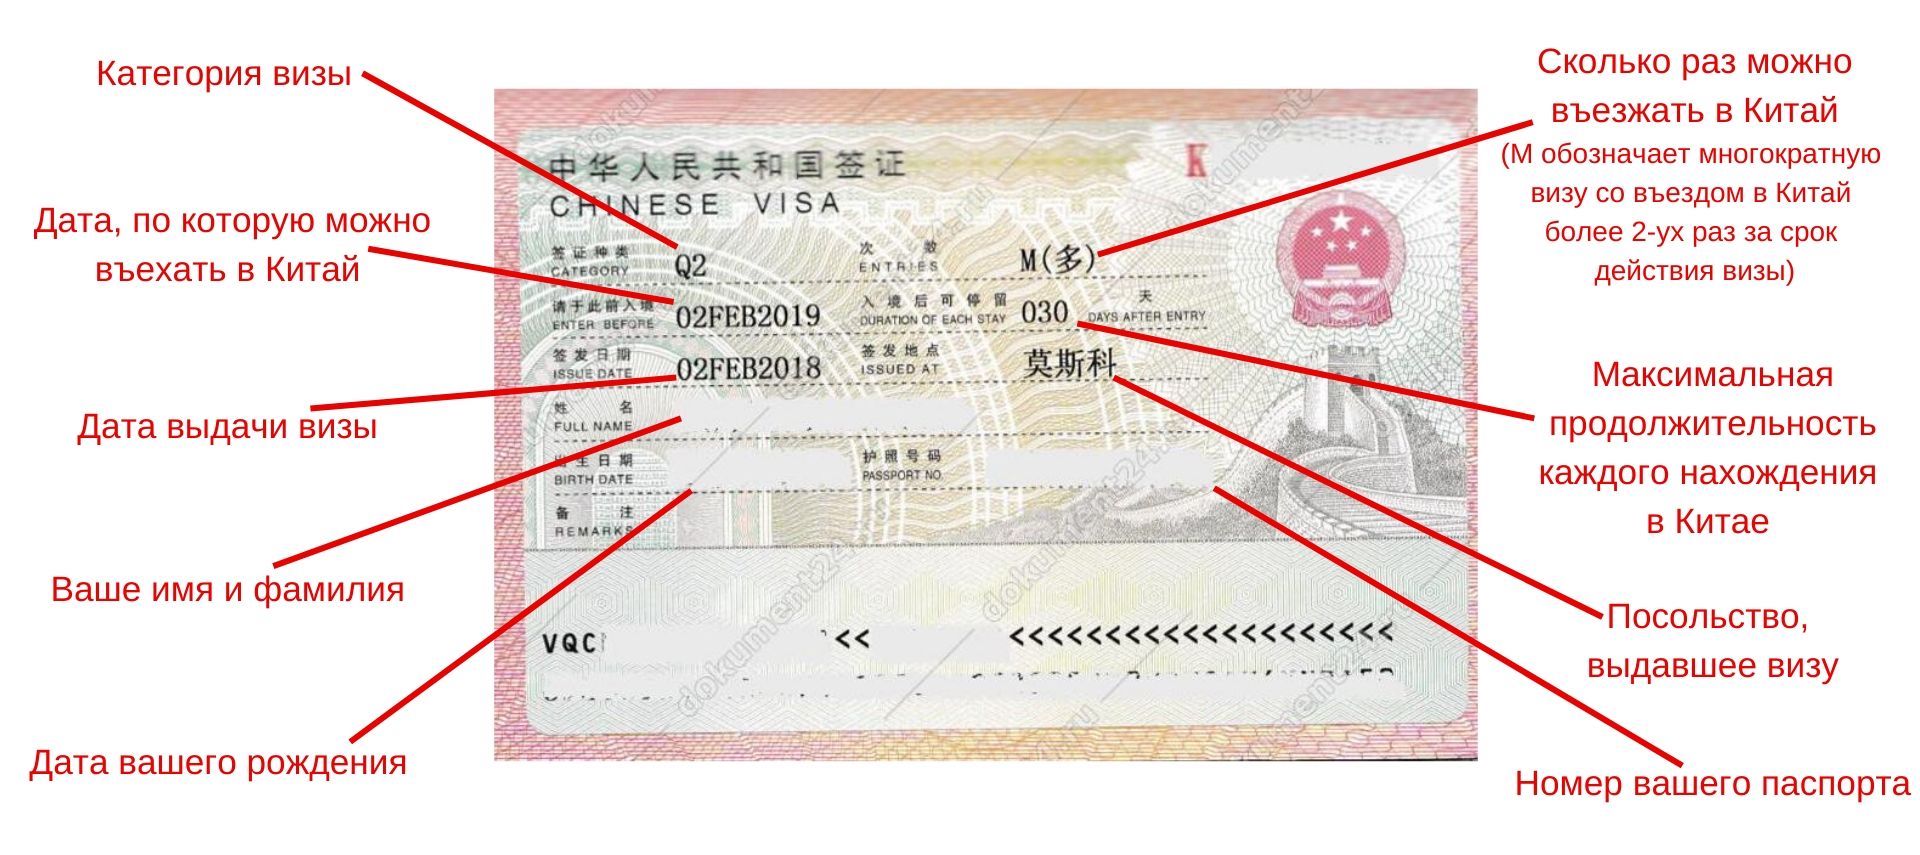 Оформление визы в китай для россиян в 2021 году